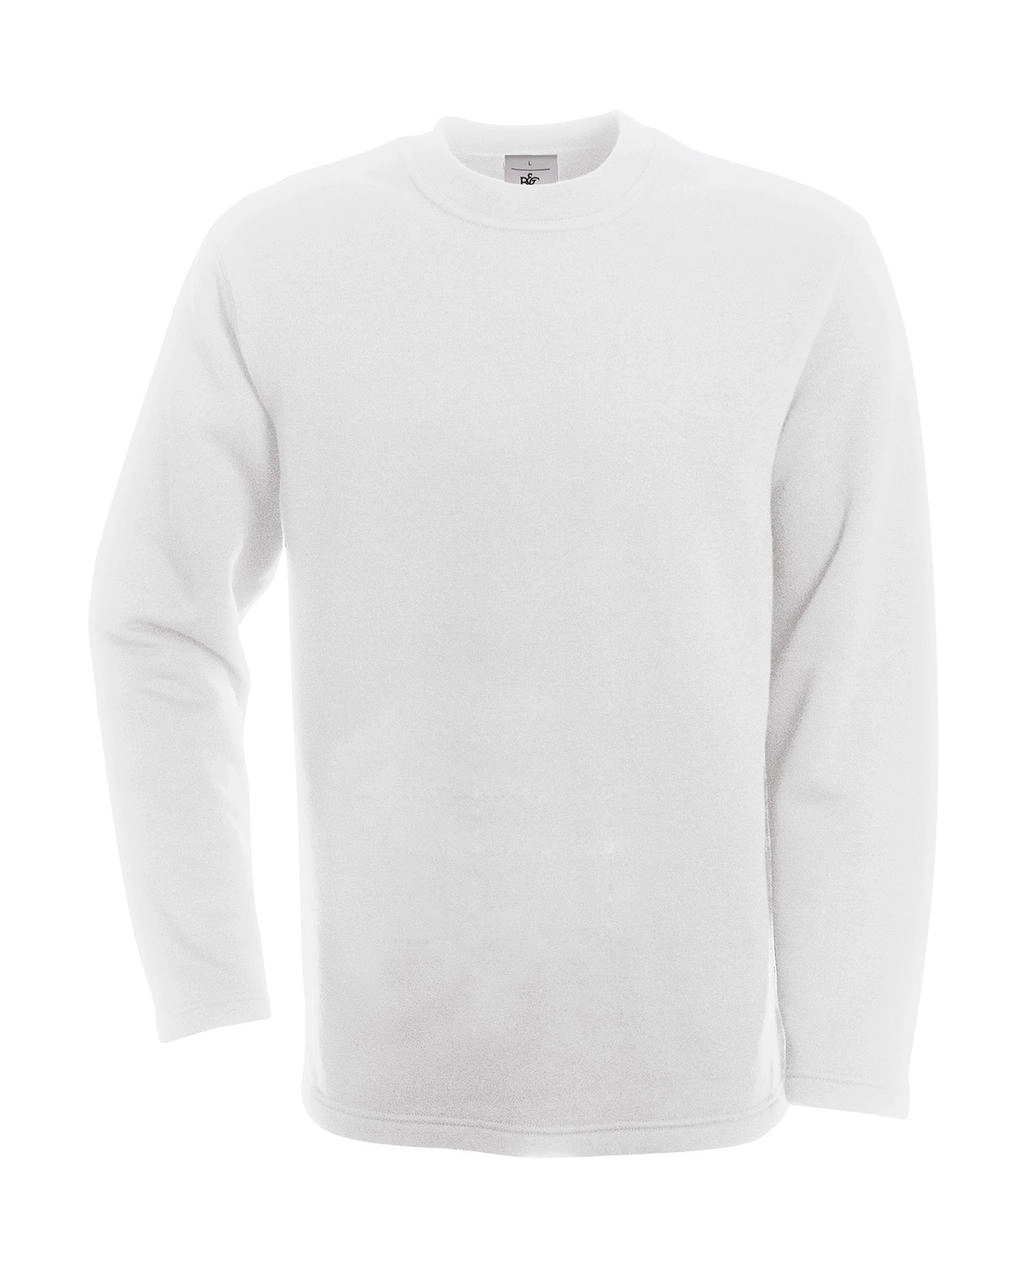 Open Hem Sweatshirt zum Besticken und Bedrucken in der Farbe White mit Ihren Logo, Schriftzug oder Motiv.